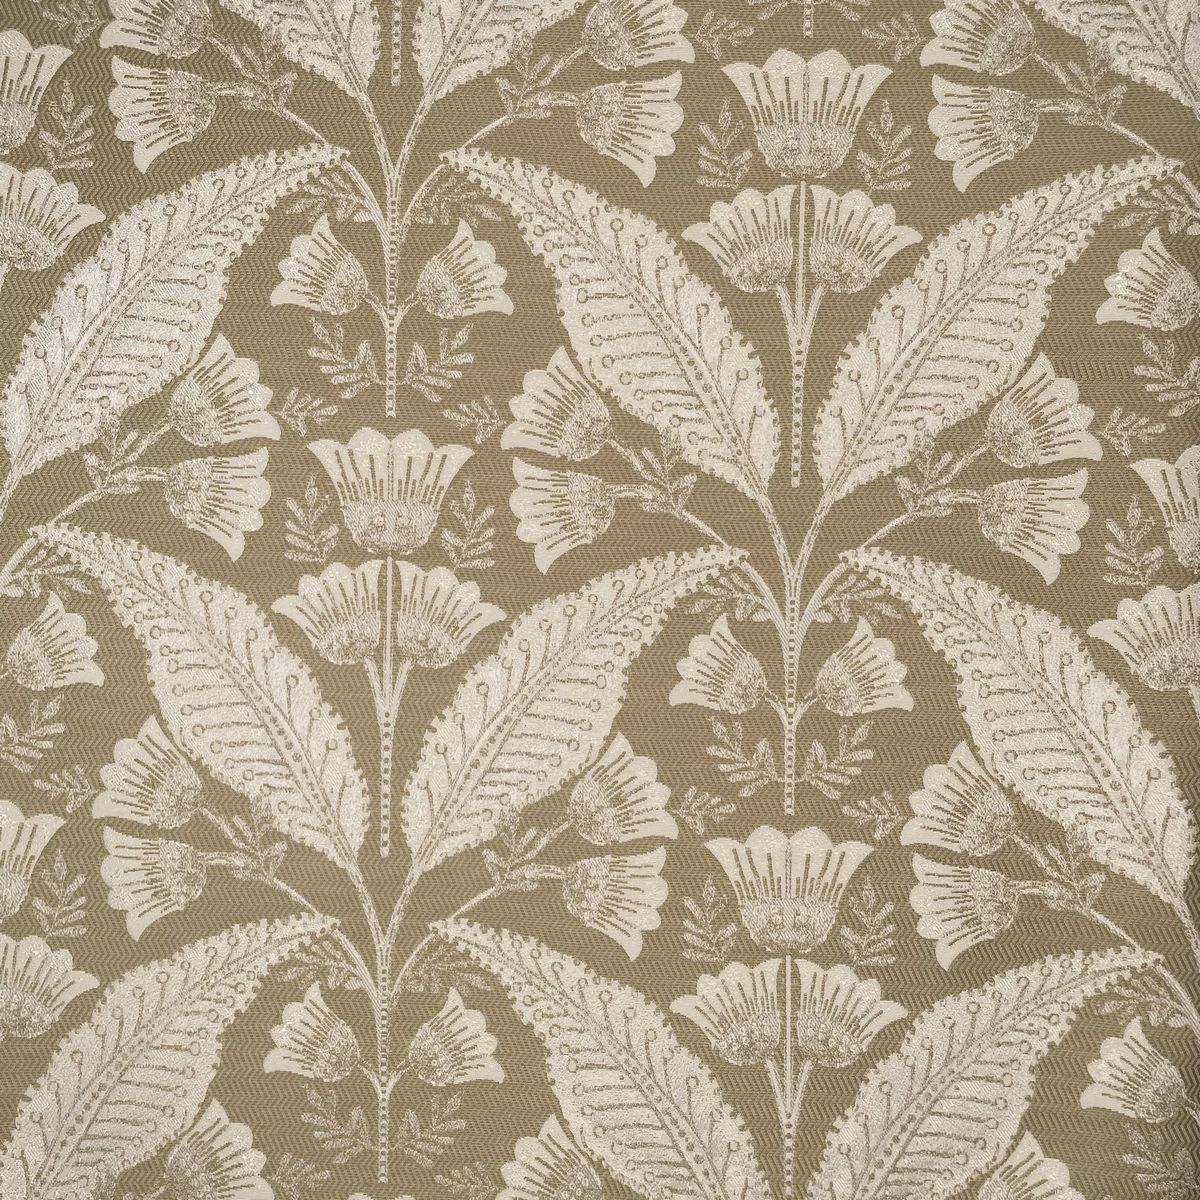 Burghley Flax Fabric by Chatham Glyn